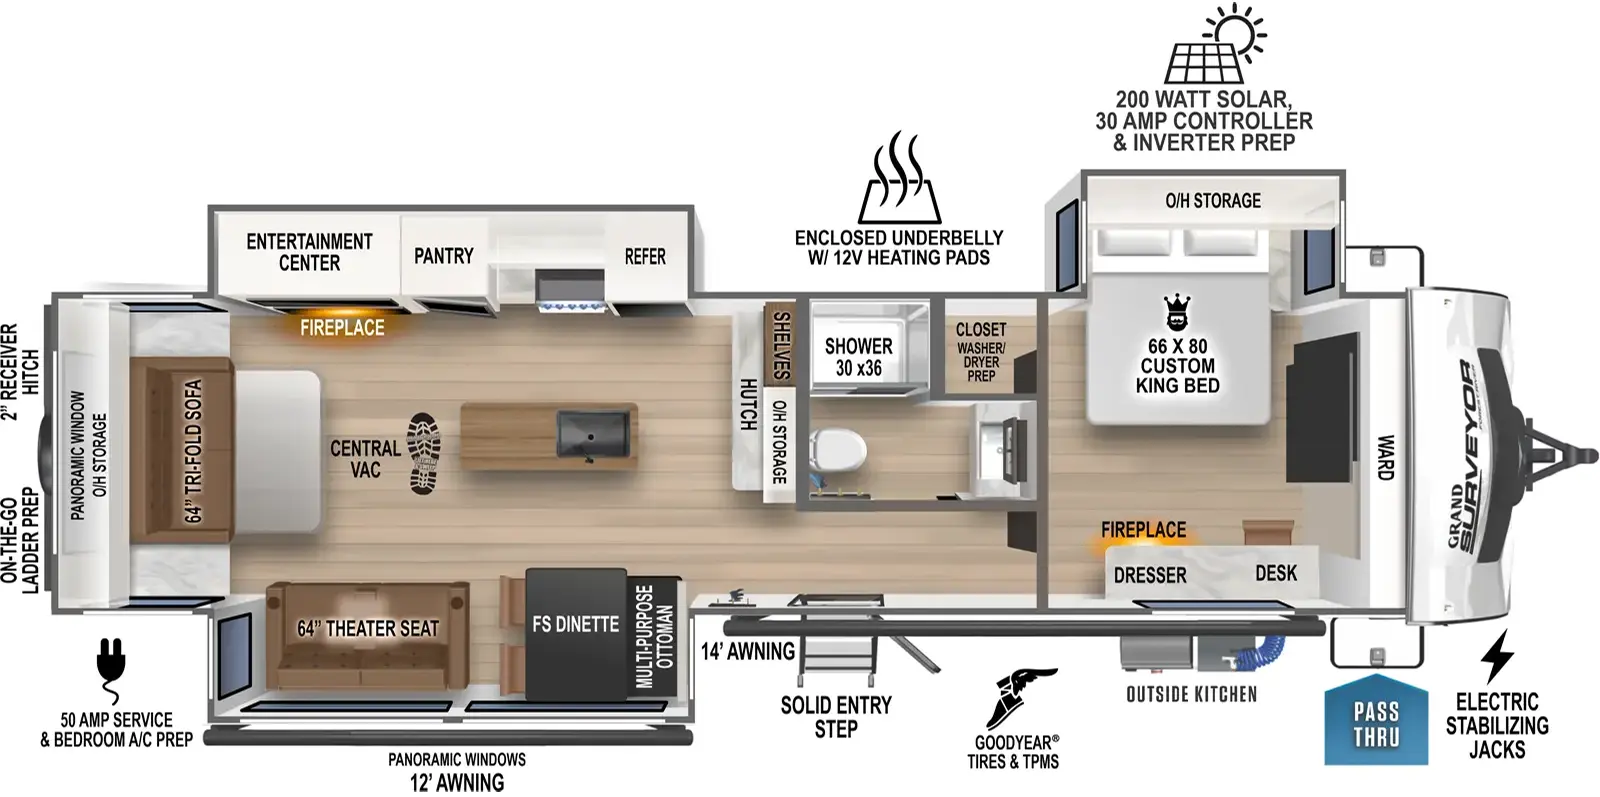 305RLBS Floorplan Image